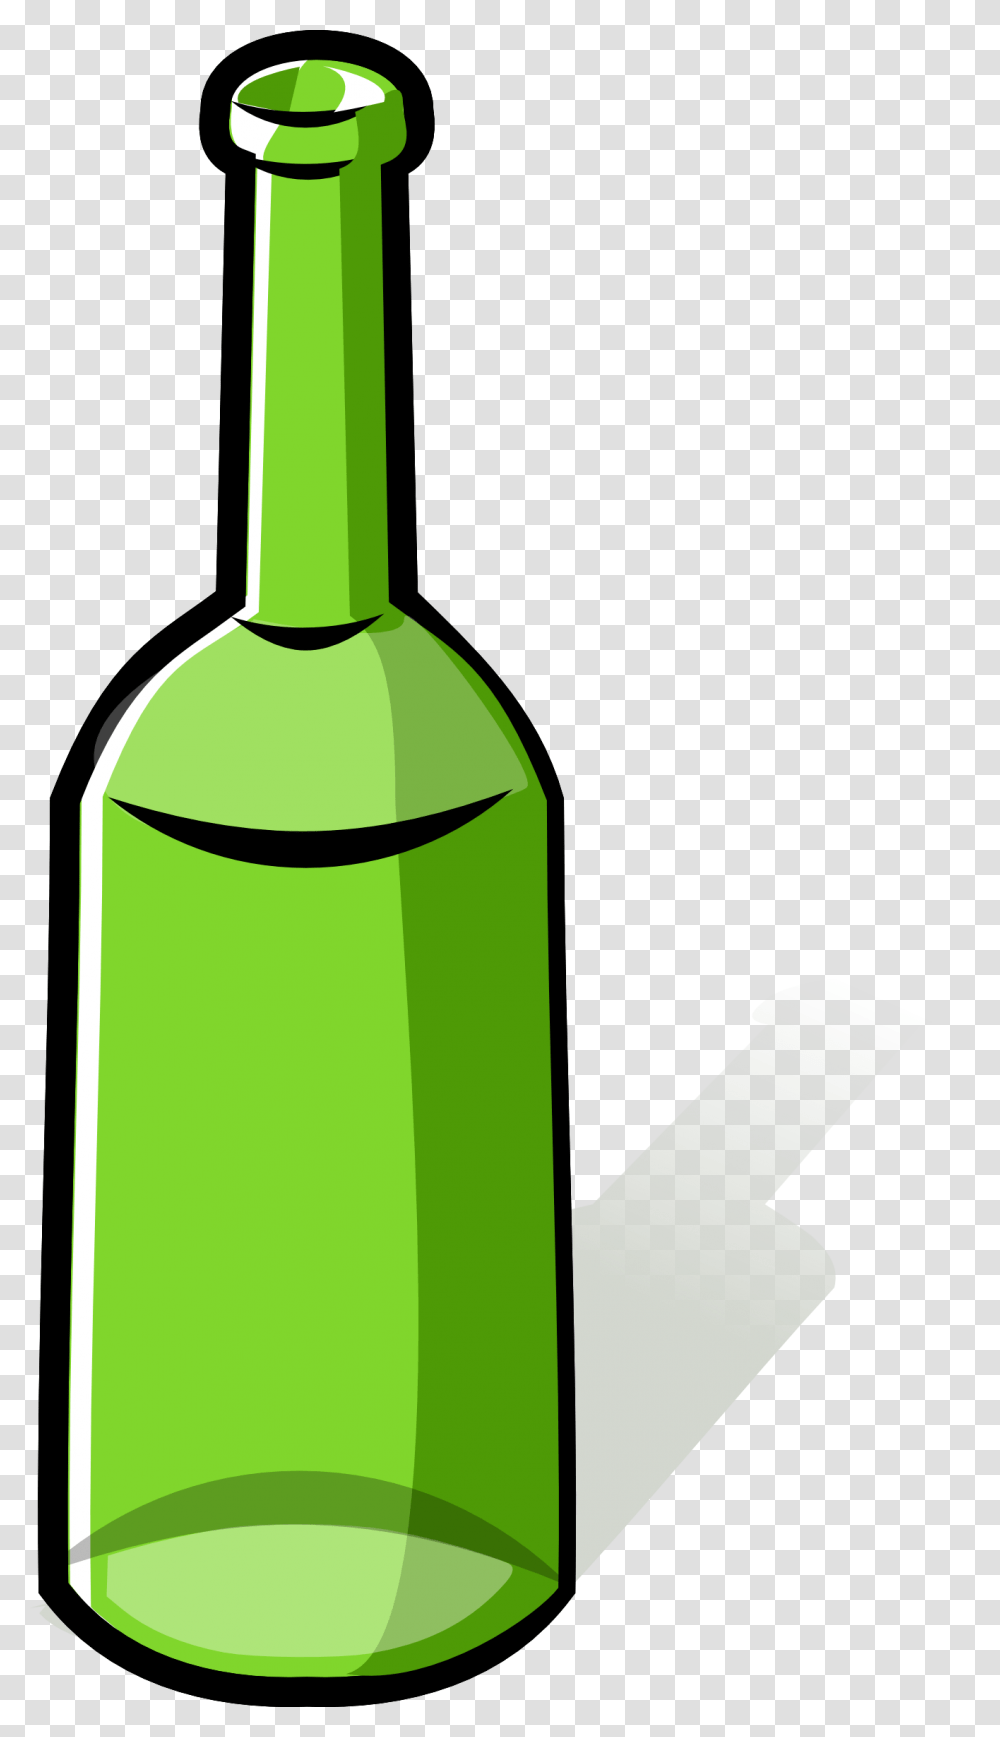 Hq Bottle Bottle Images, Beverage, Pop Bottle, Shovel, Tool Transparent Png